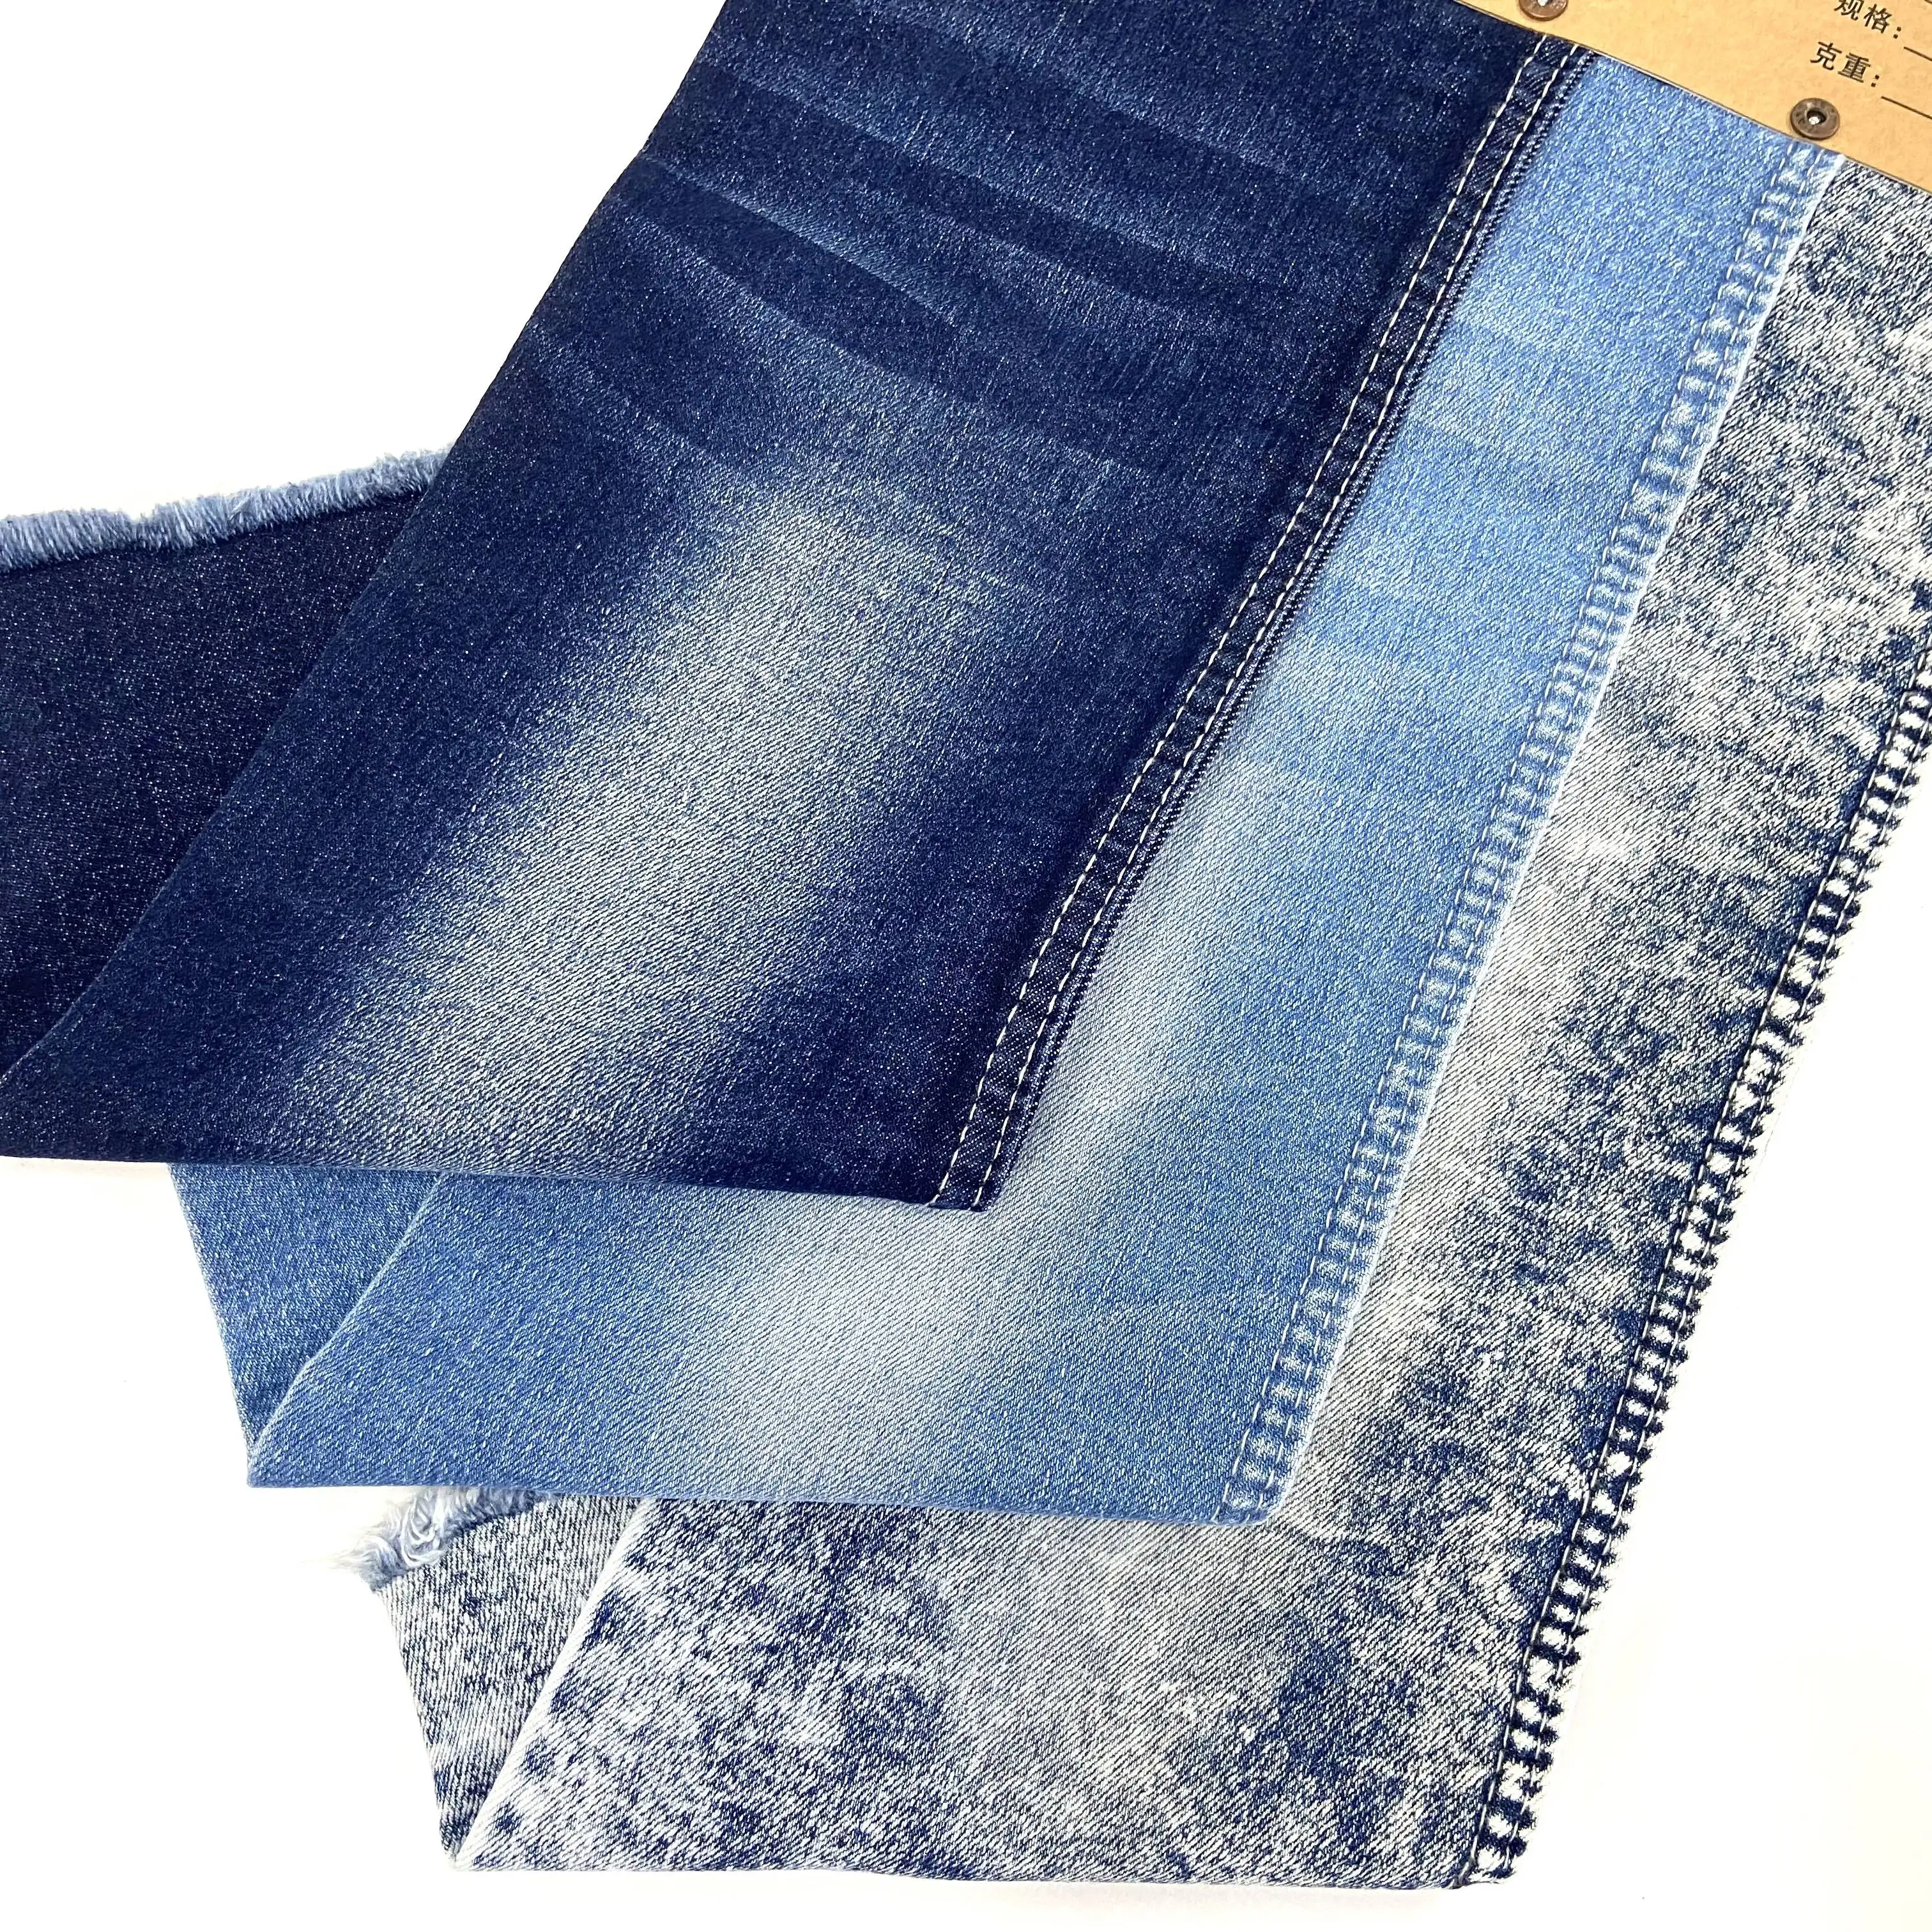 C Хлопковая джинсовая ткань, текстильная ткань от 11 унций, в наличии, стиранная или немытая, подходит для производителя одежды